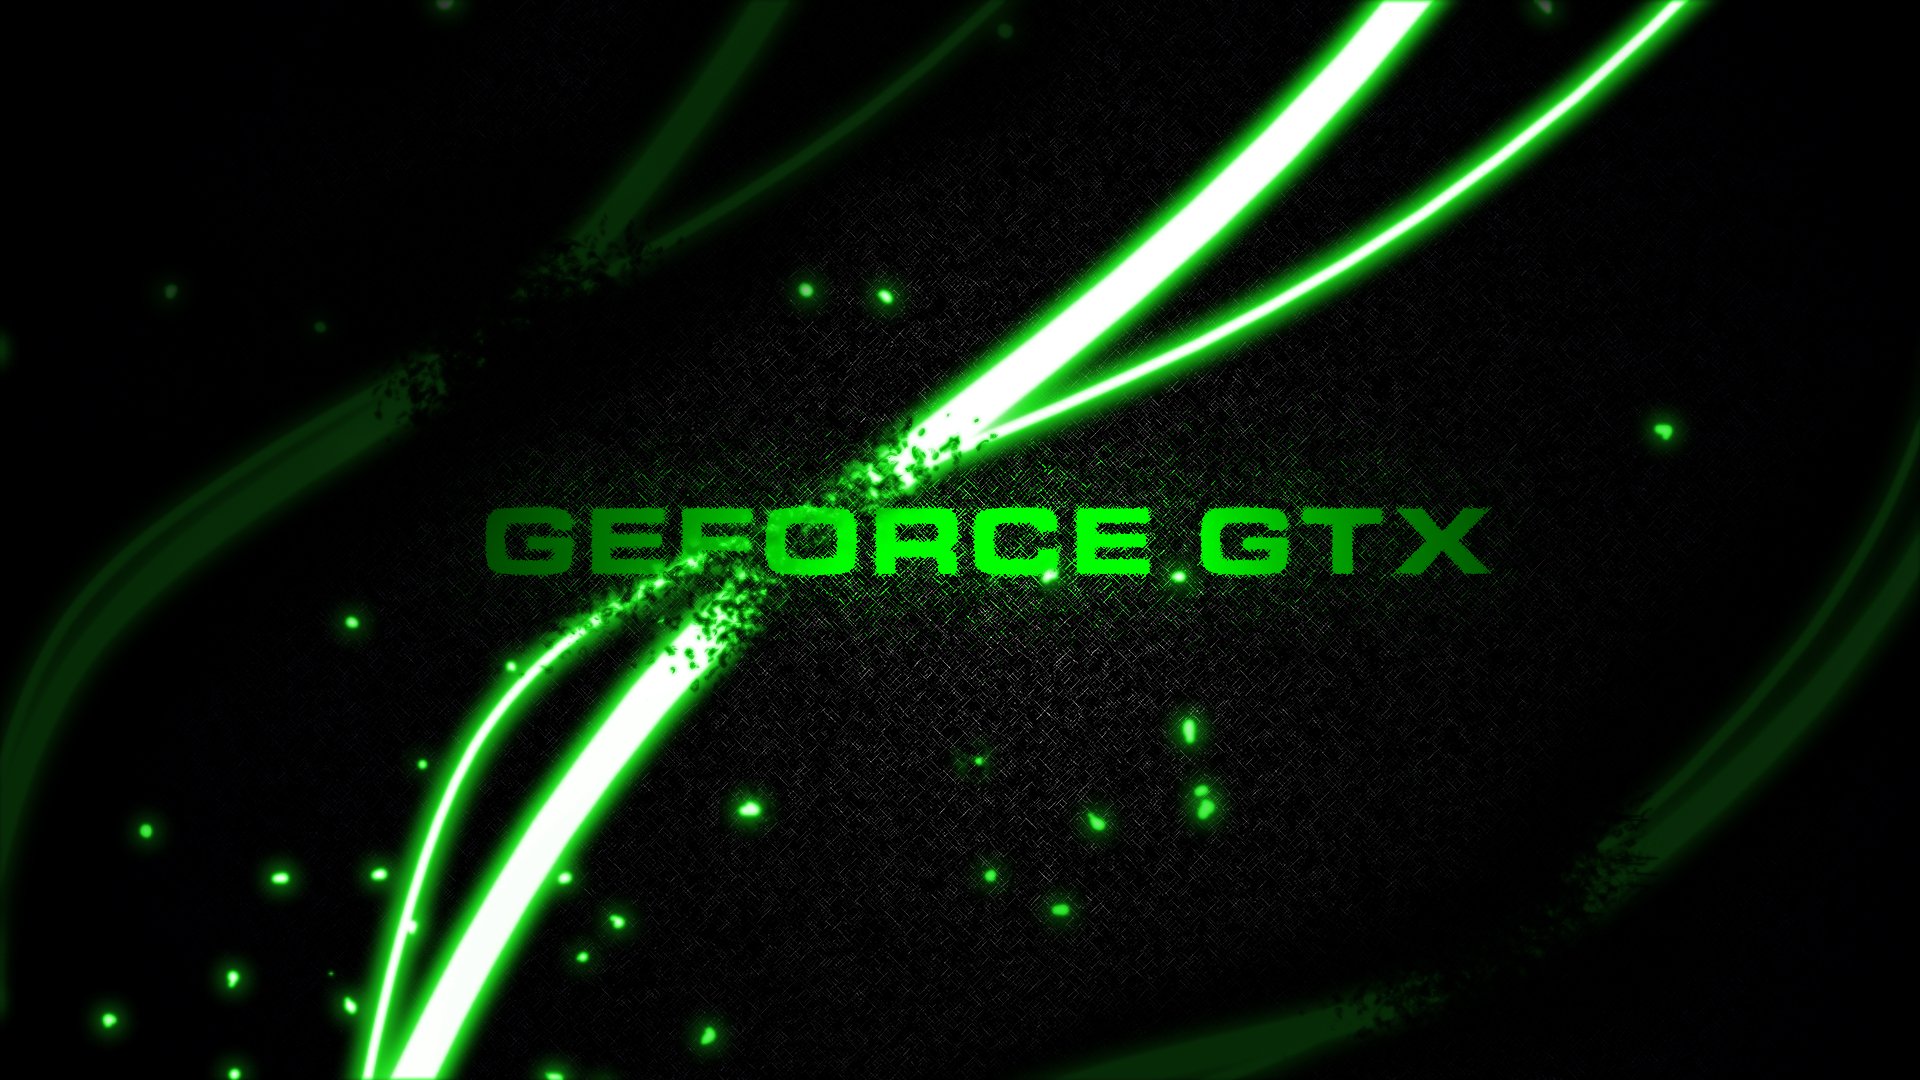 GeForce GTX 1080 nVidia | Hi tech wallpaper, Technology wallpaper, Graphic  card